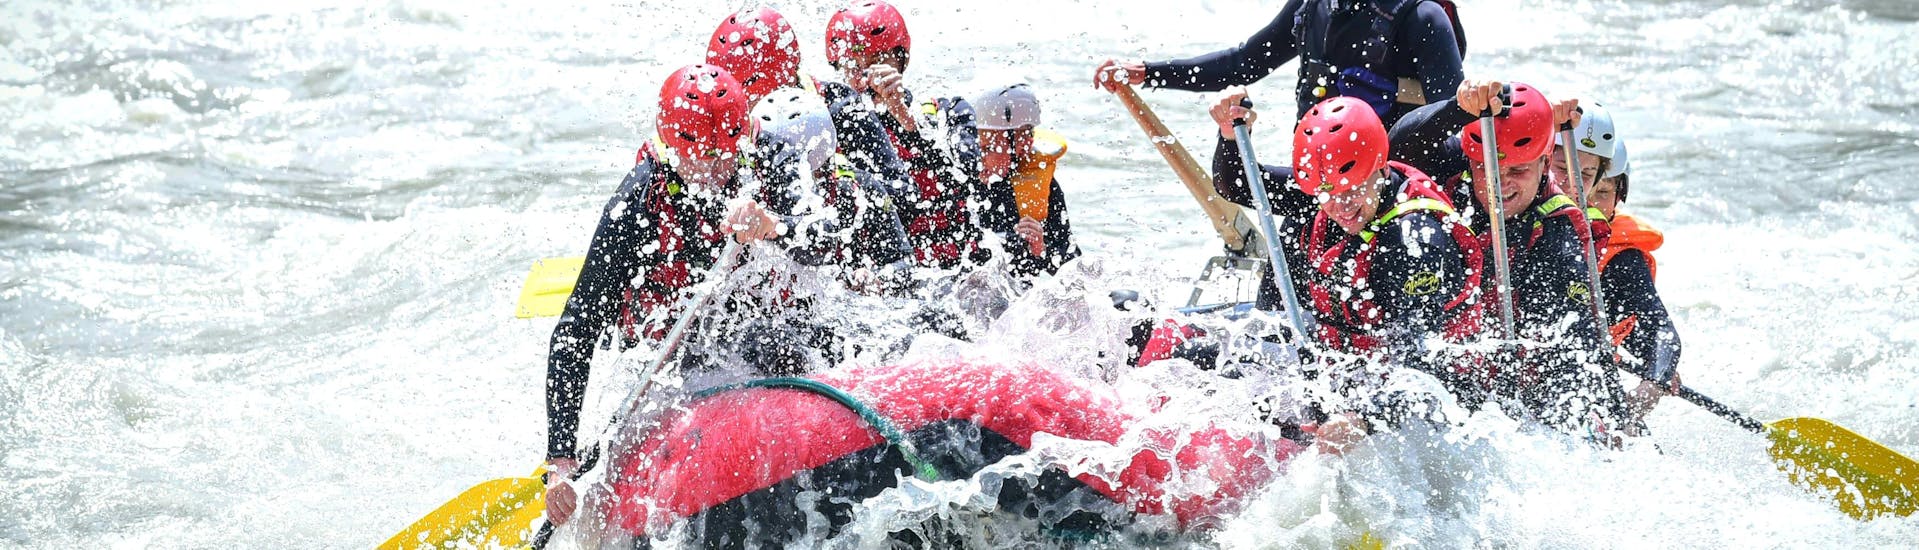 Een raftinggroep die de wilde golven en rollen van Ötztaler Ache beheerst tijdens hun Rafting Tour "Extreme" met Experience samen met twee door de staat gecertificeerde gidsen van Natur Pur Outdoorsports.